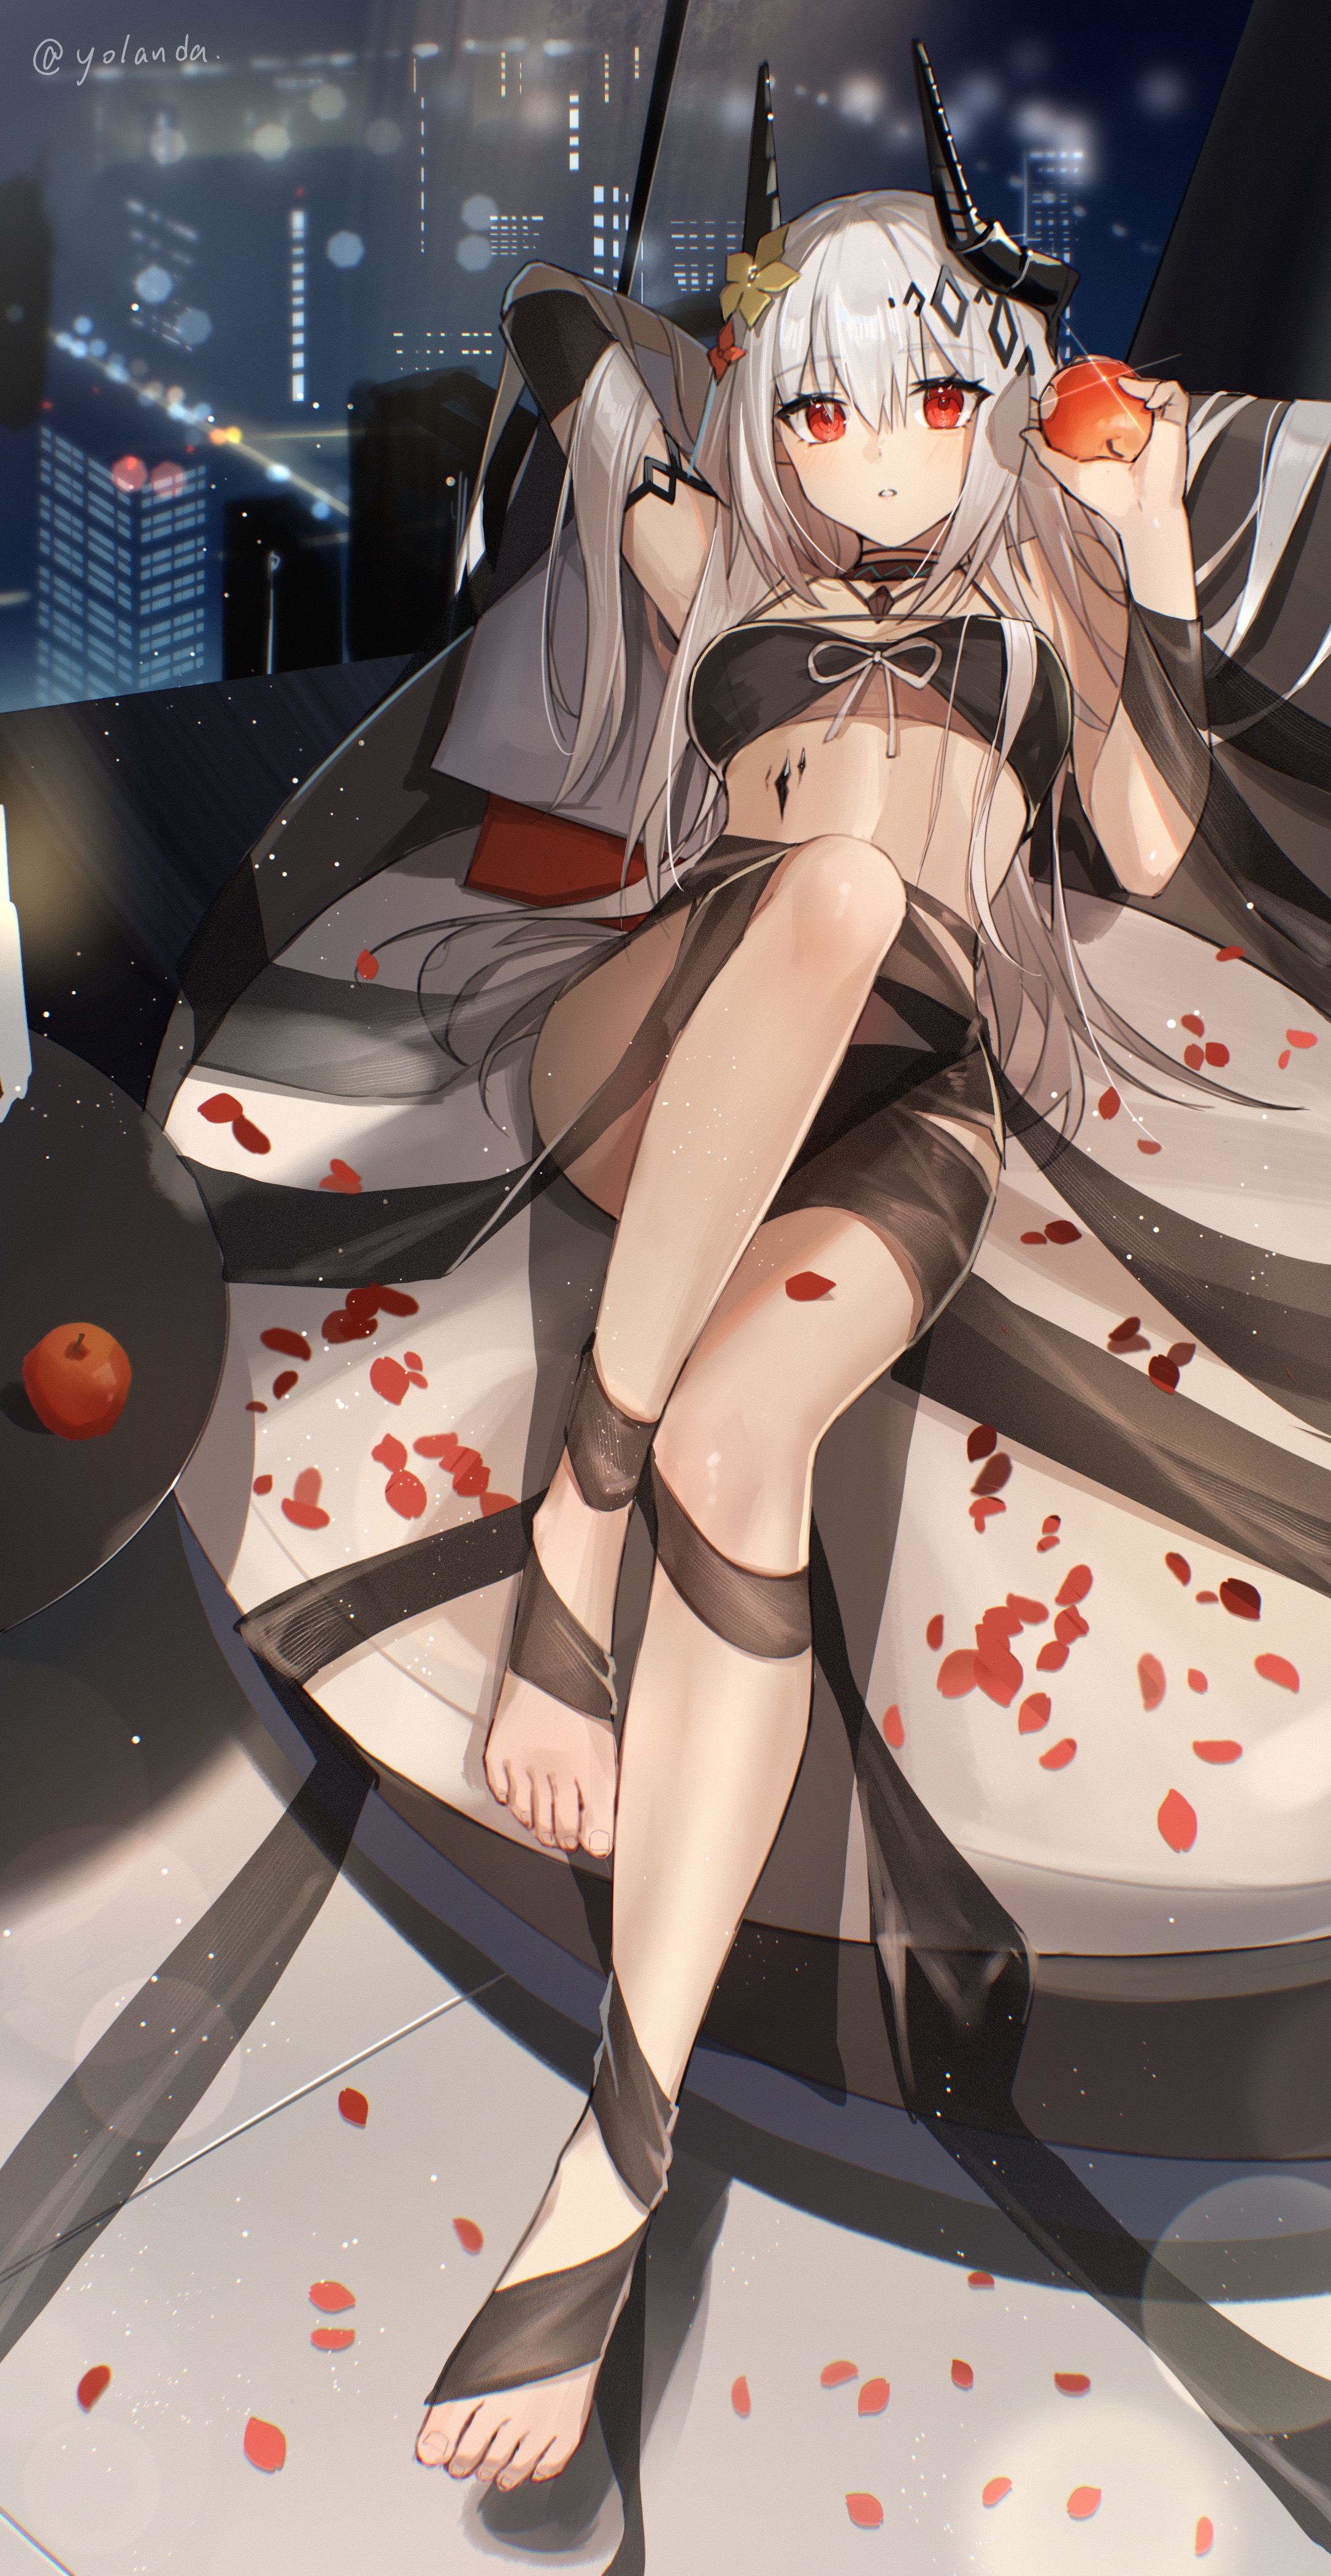 Anime 2170x4200 Yolanda anime petals white hair horns red eyes apples fruit anime girls belly lying on back